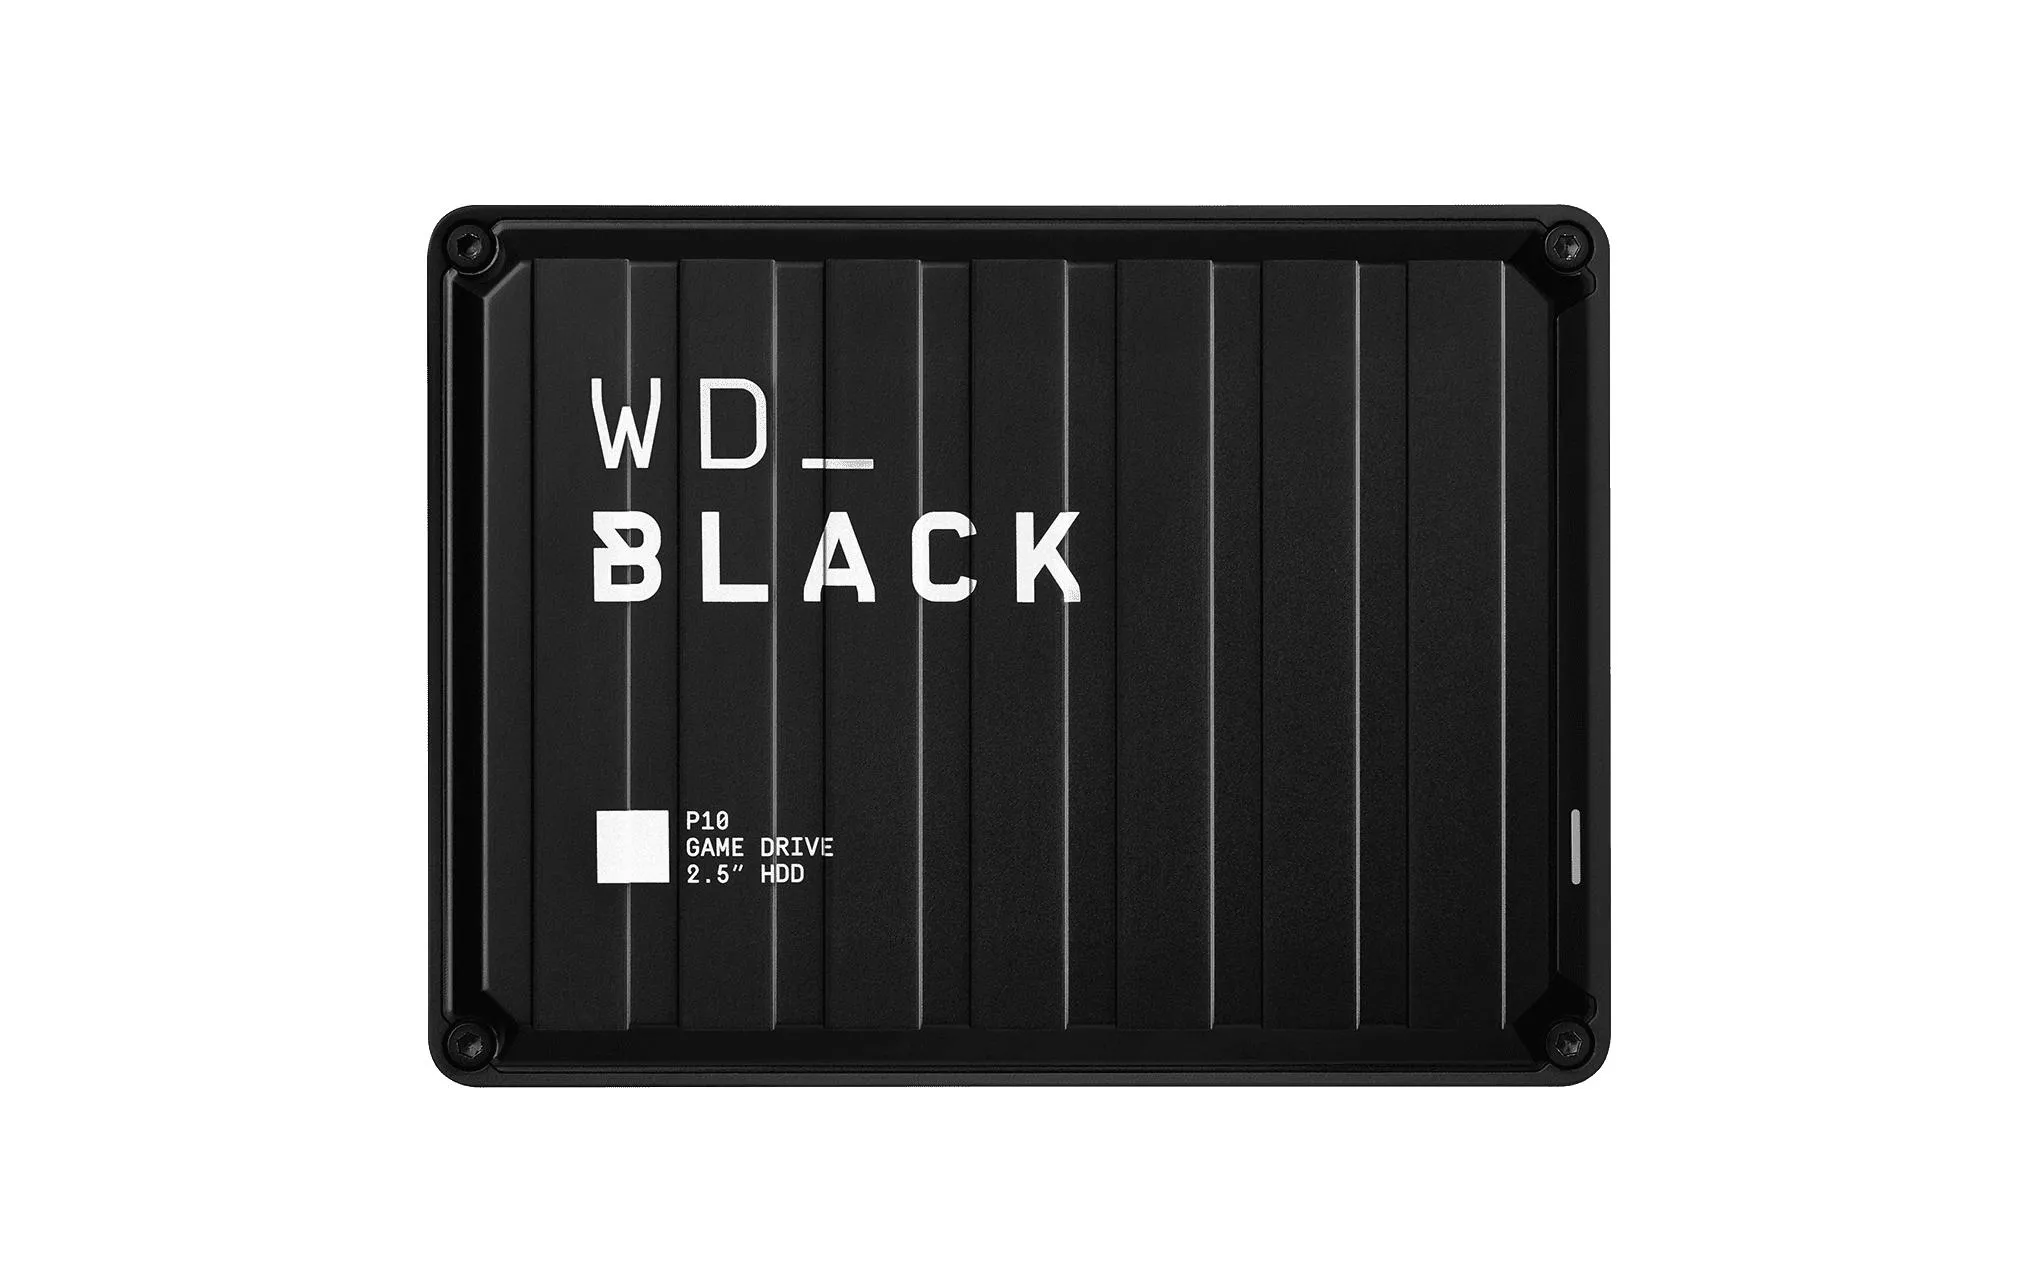 Disque dur externe WD_BLACK P10 Game Drive 4 TB